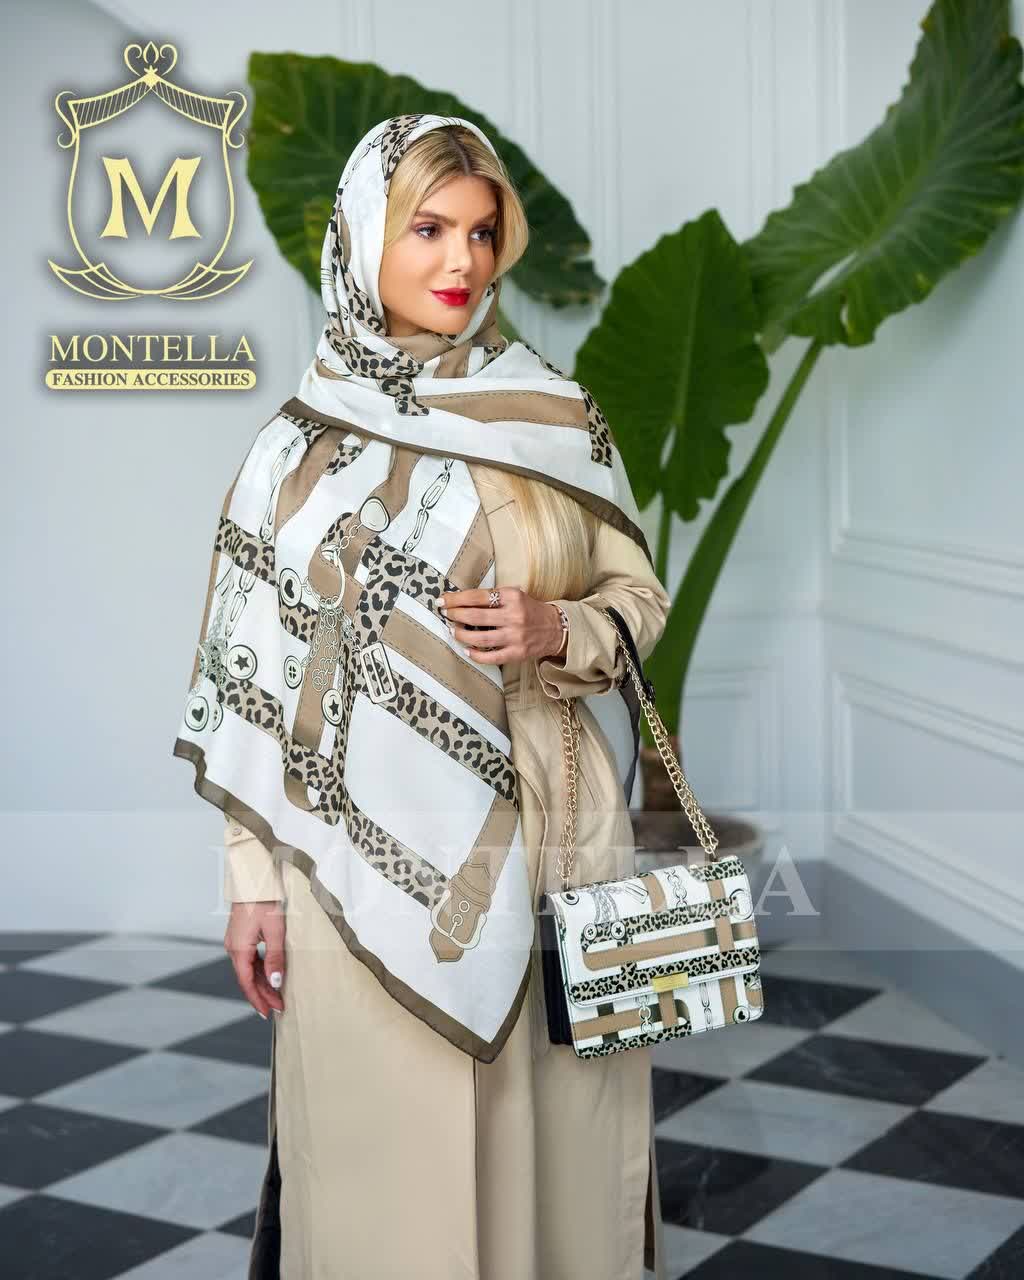 ست کیف و روسری و شال زنانه باکیفیت رنگ کرمی طرح زنجیری و پلنگی با کیف پاسپورتی دسته زنجیری ارسال رایگان کد mo295